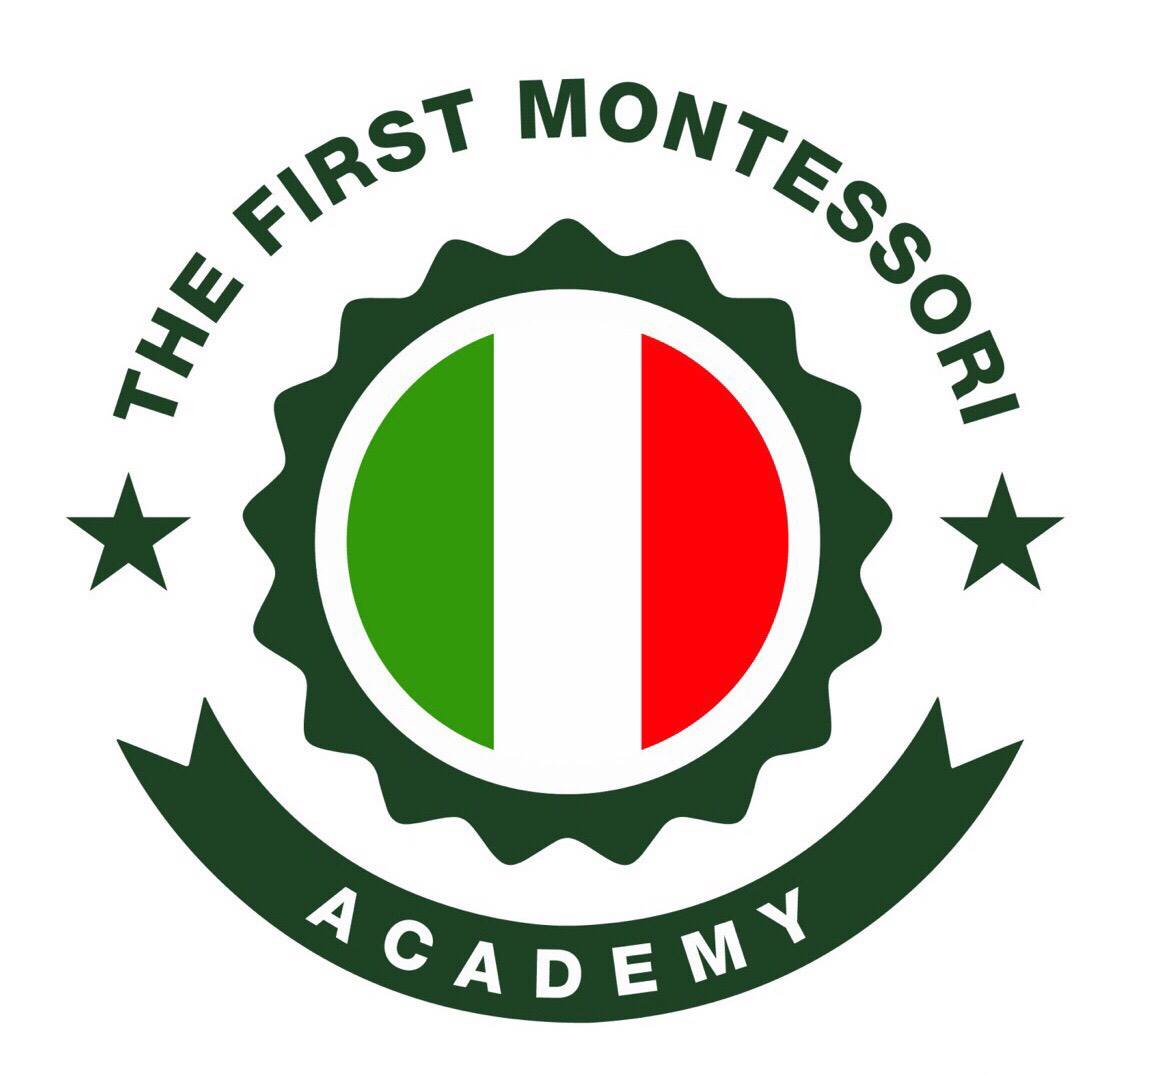 Trường Mầm non The First Montessori Academy – Khu dân cư An Khang, Đường Võ Chí Công, Phường Phú Hữu, Quận 9, TPHCM